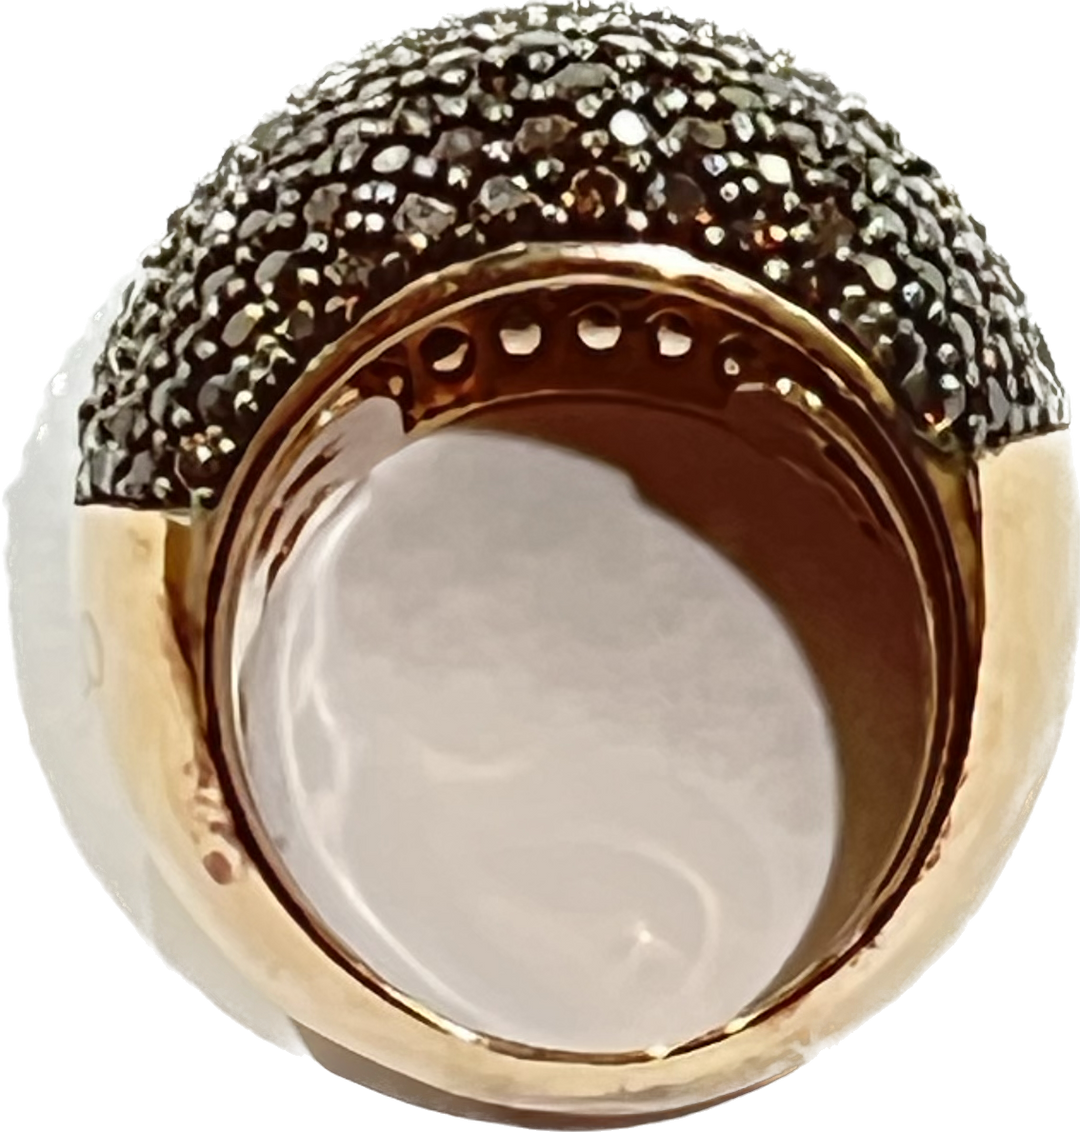 Sidalo Pavè Brown Ring Silver 925 마감 PVD 골드 로사 입방 지르코니아 M4425-BW